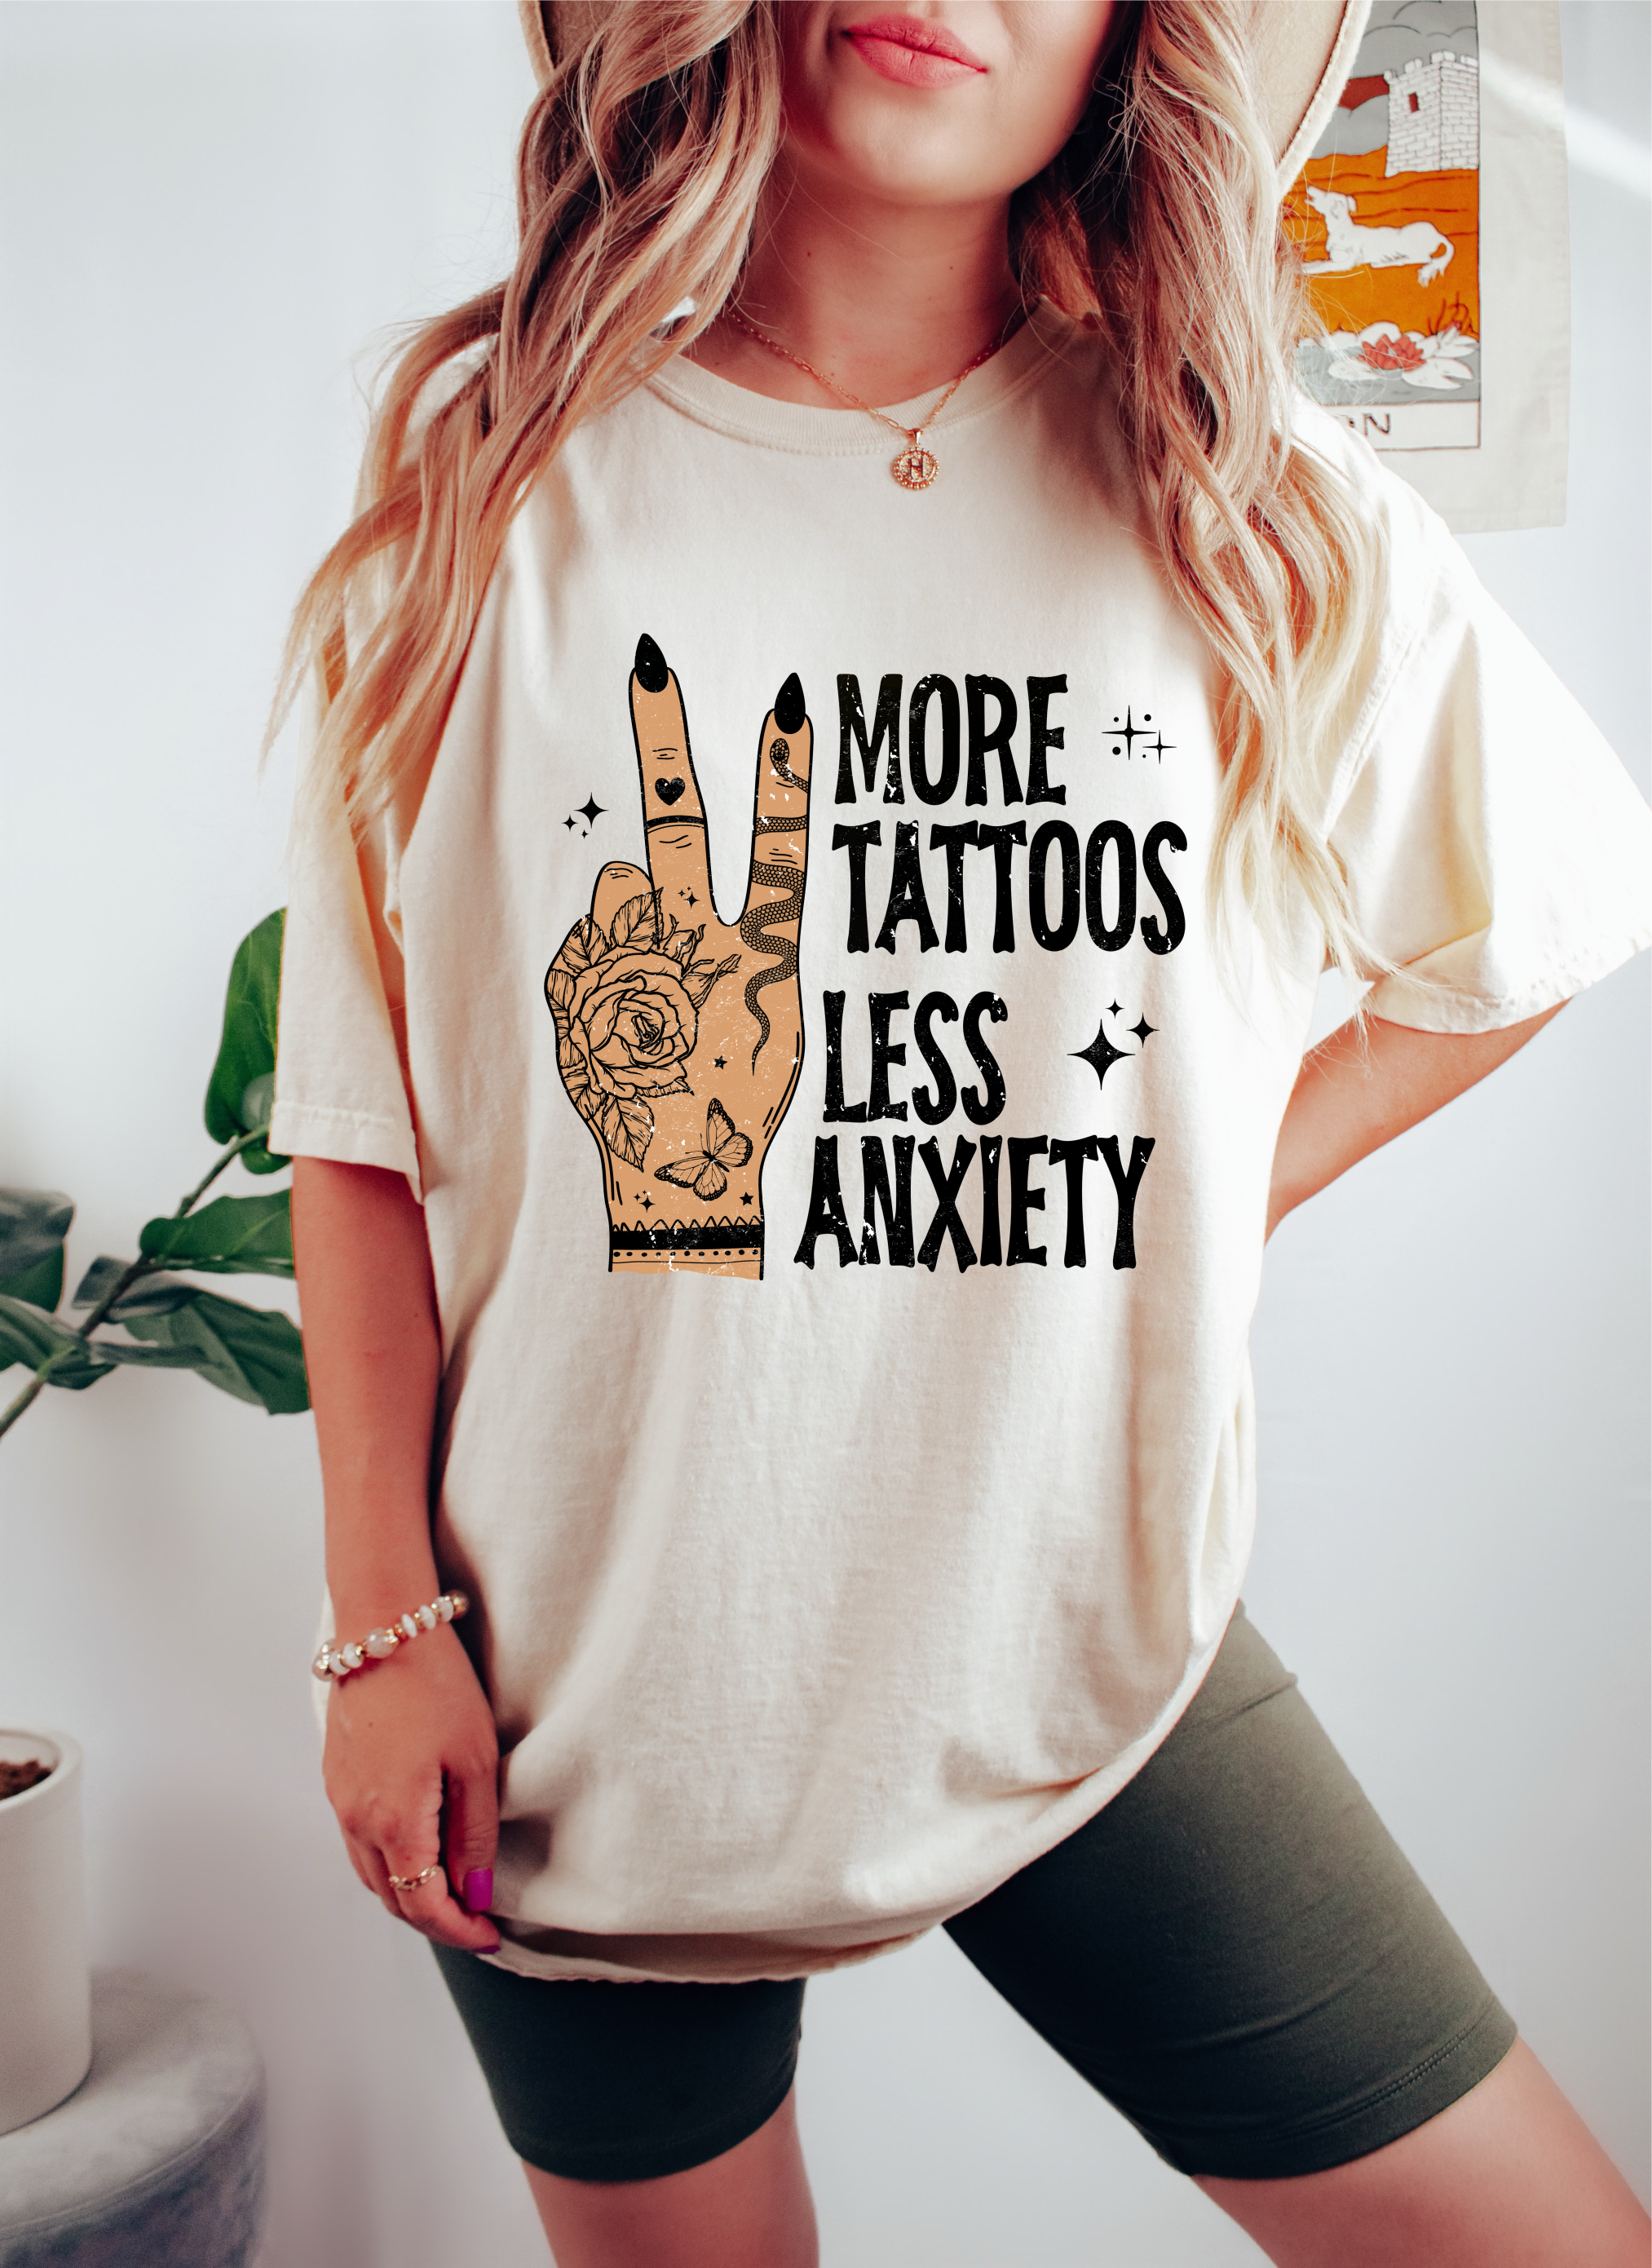 Post tattoo depression and anxiety : r/tattooadvice